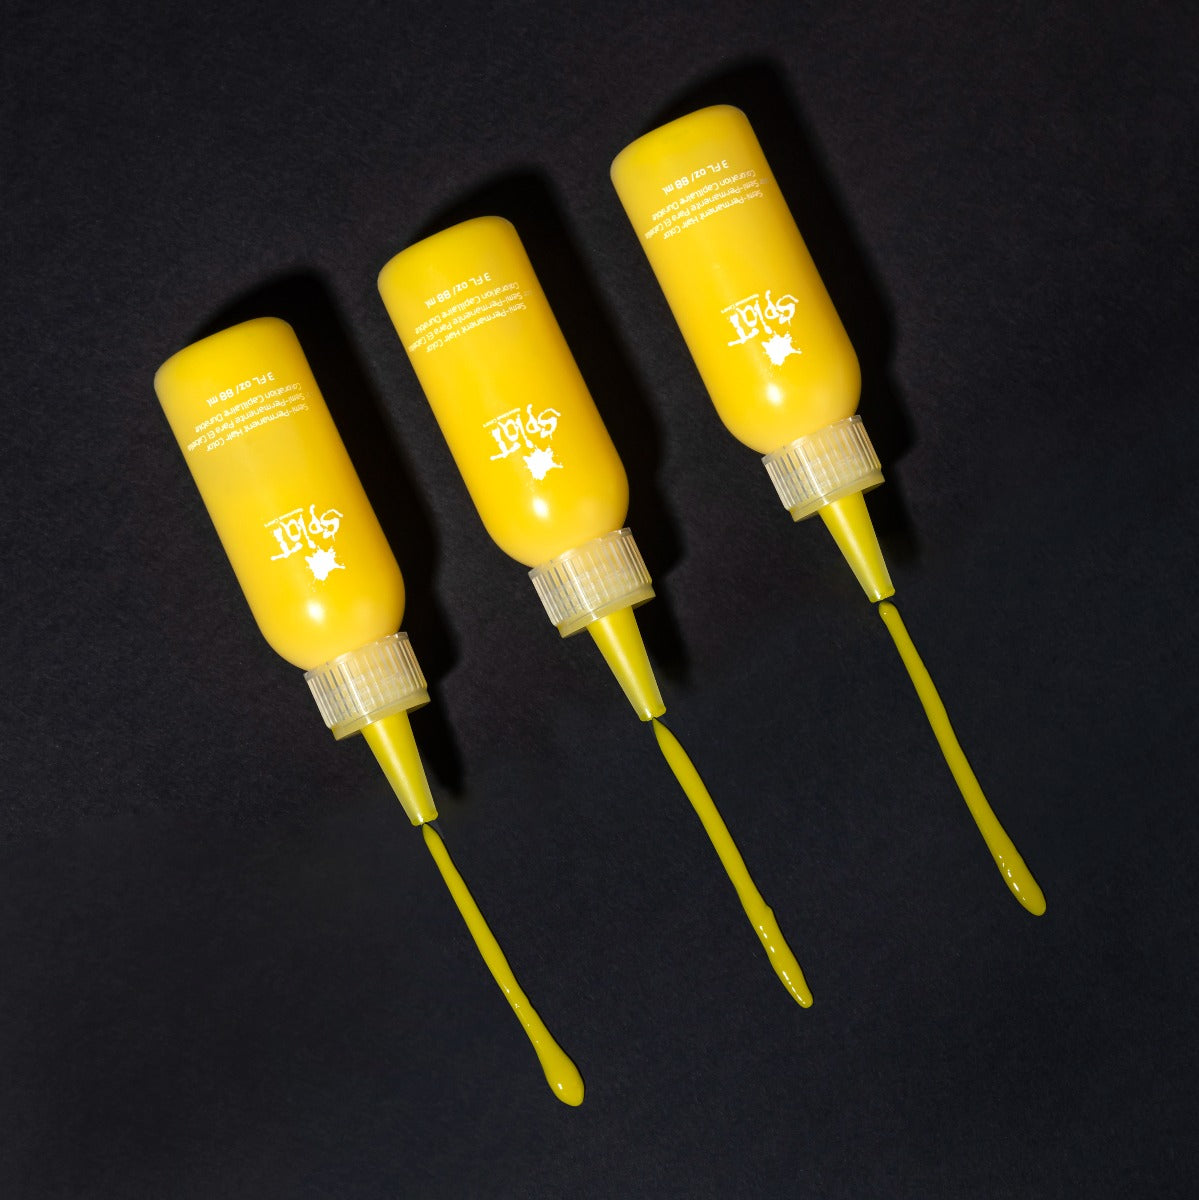 Lemon Drop: Yellow Semi-Permanent Hair Dye Complete Kit with Bleach